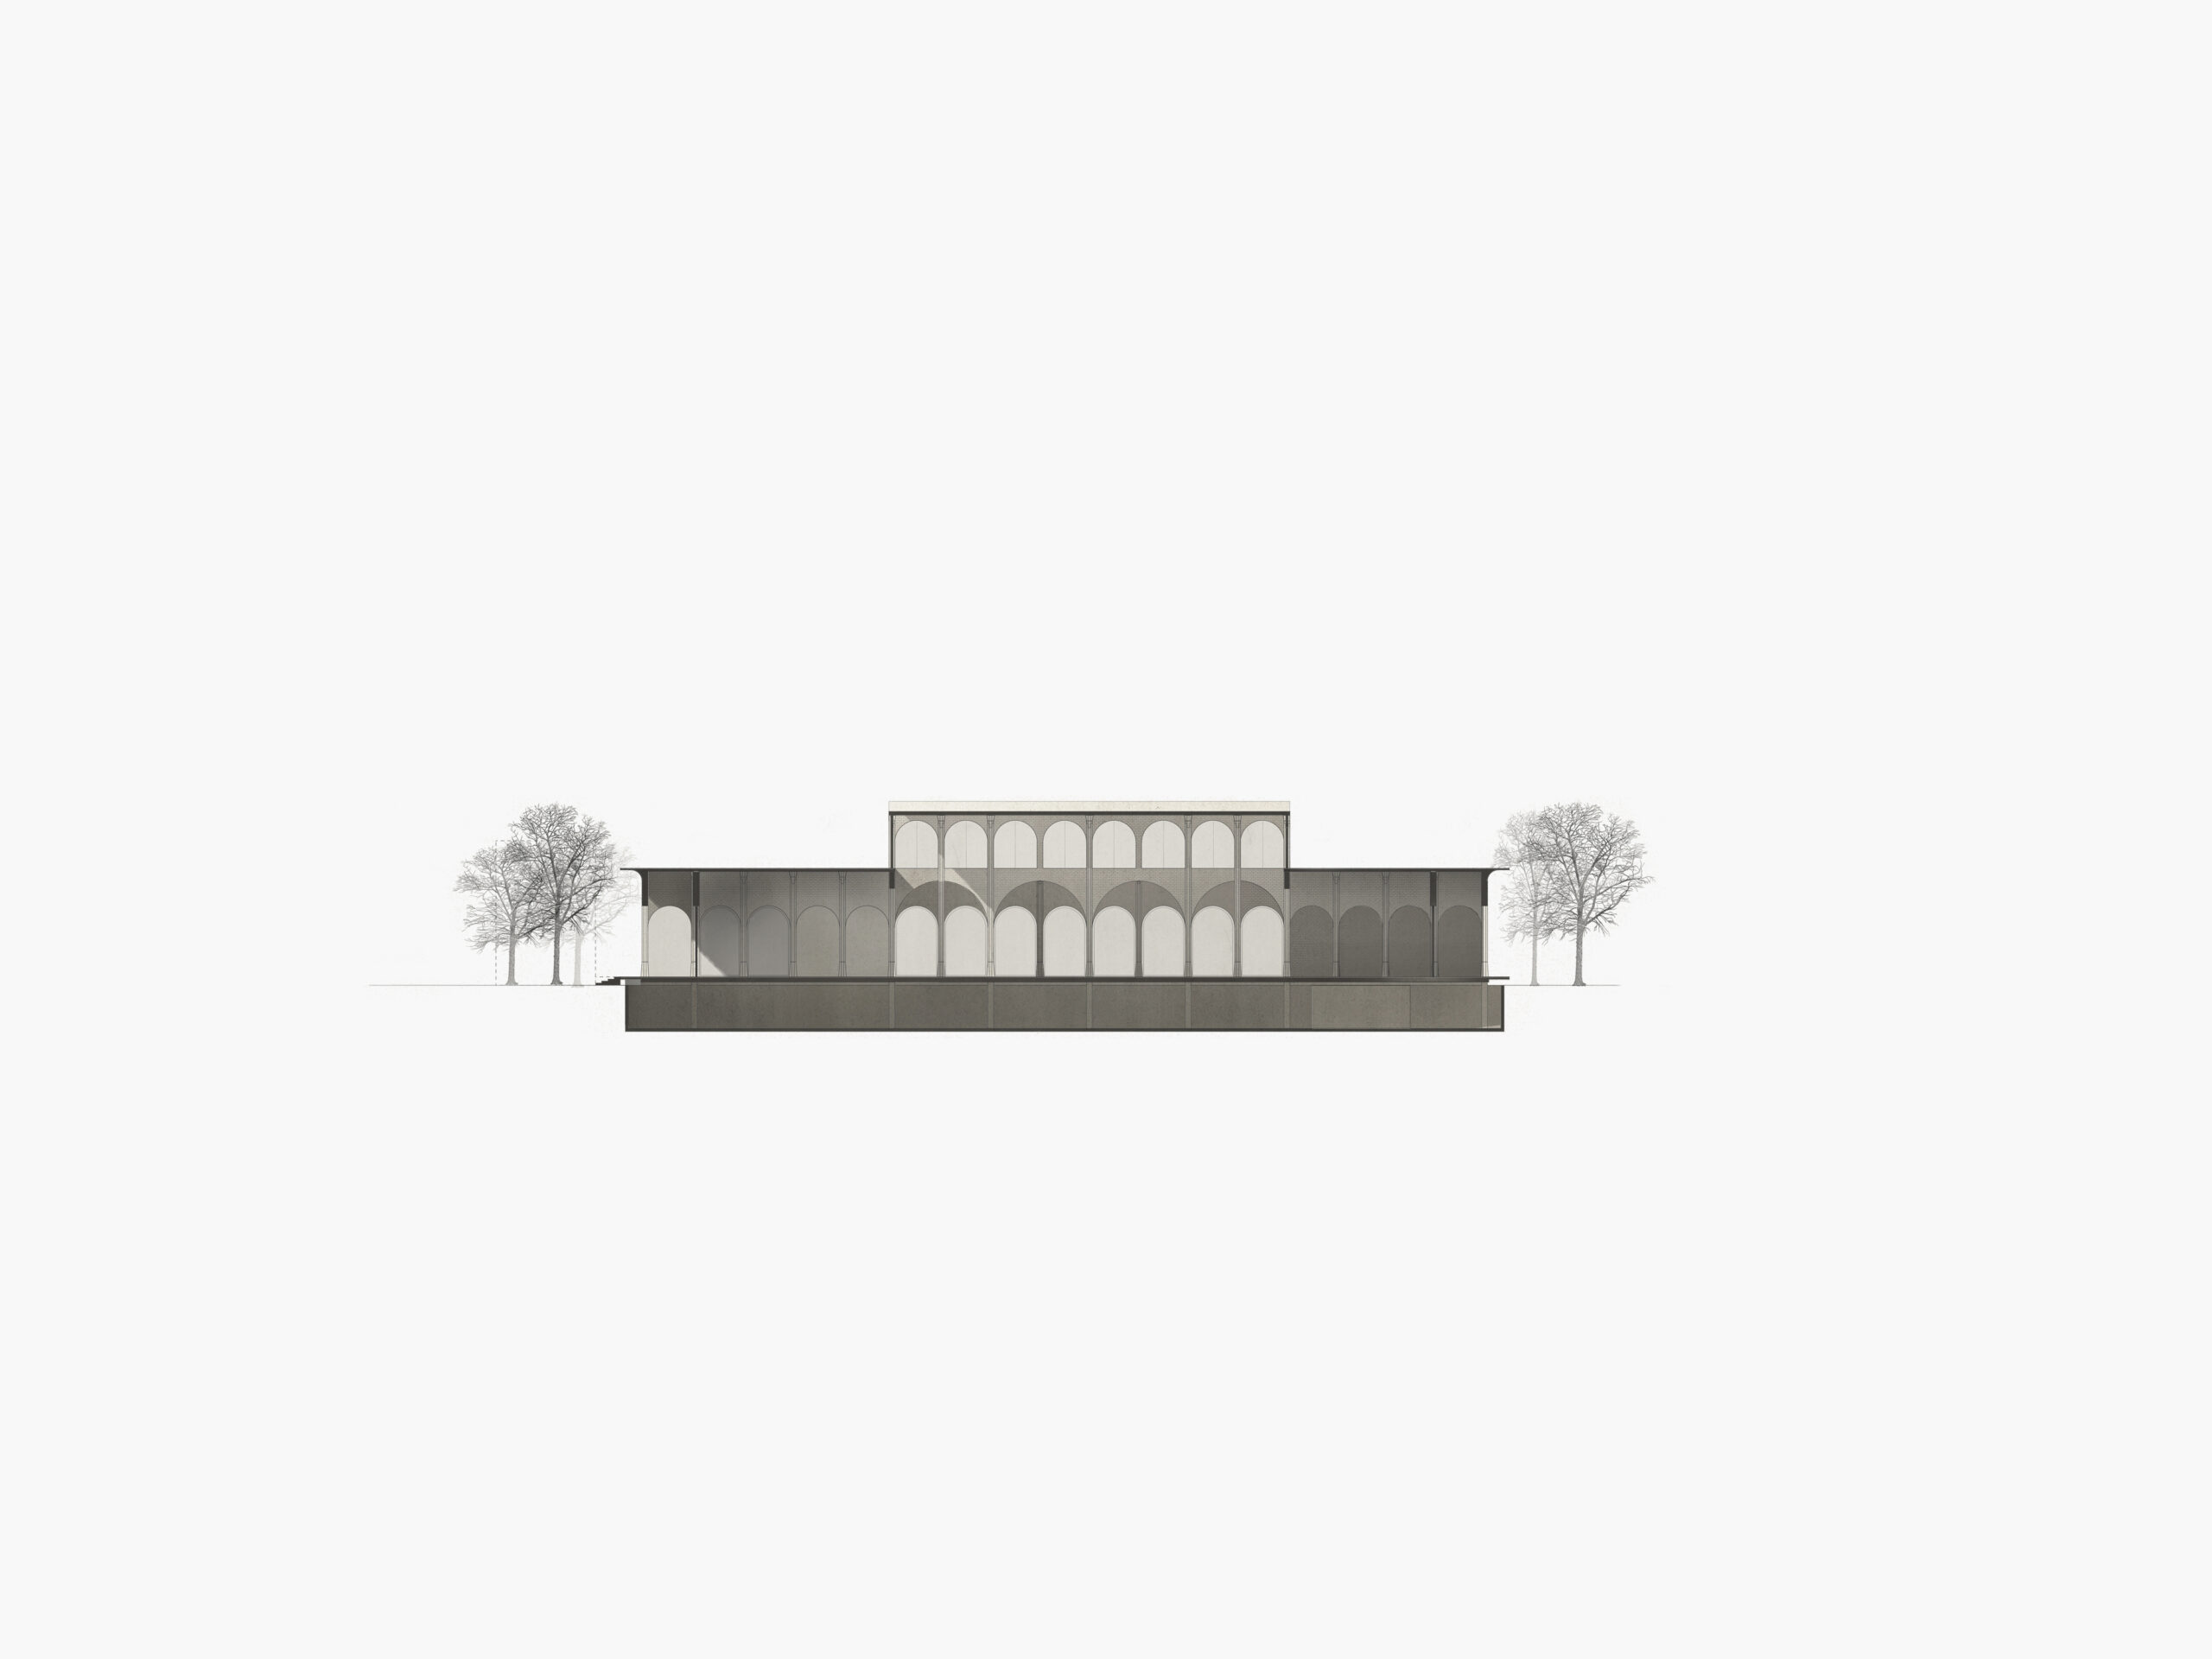 Michael-Becker-Architects-Architekten-Verbrauchermarkt-Rottenburg-Querschnitt